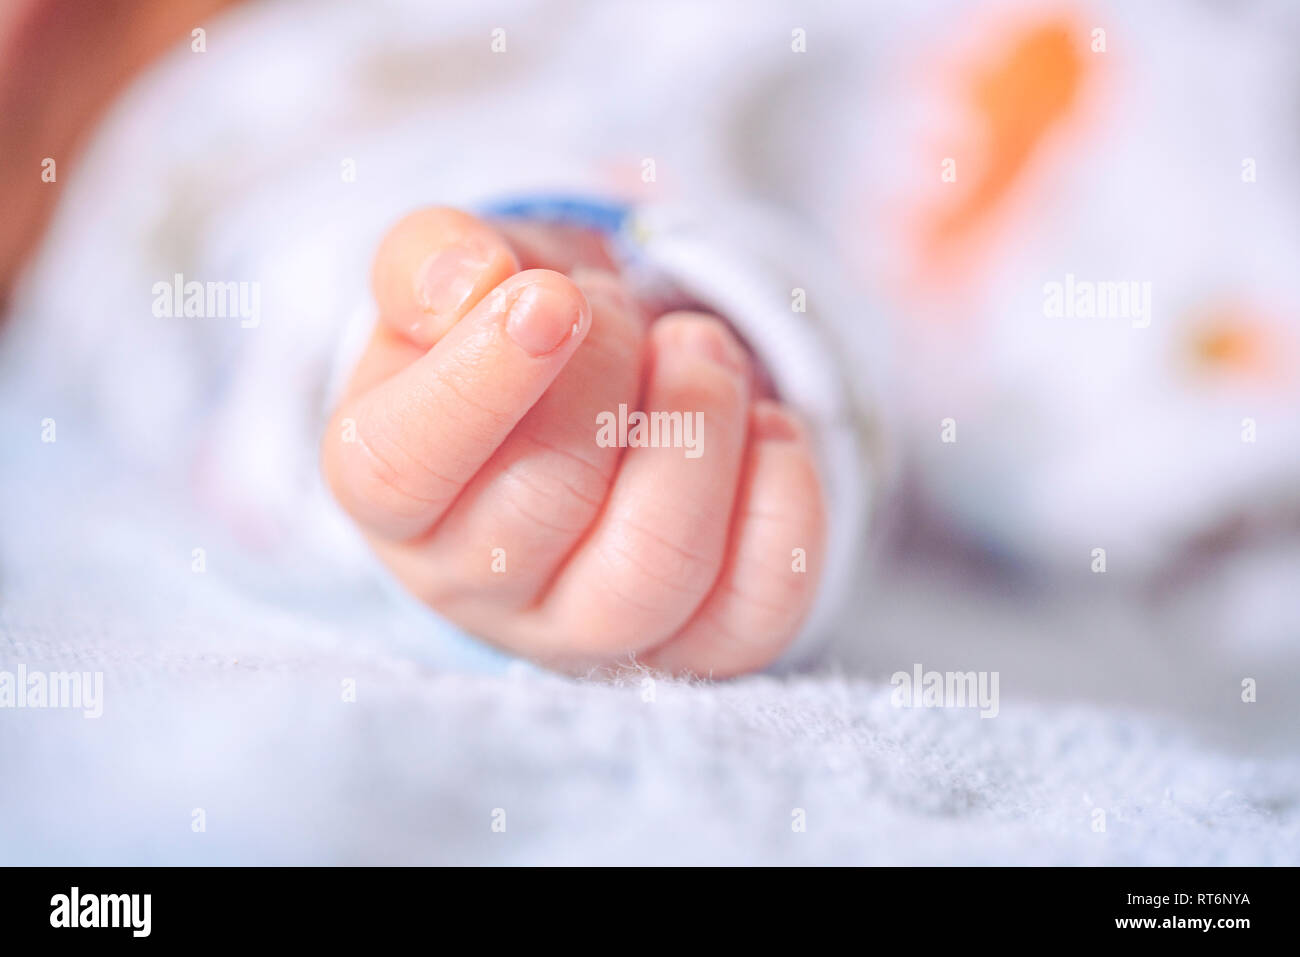 Neugeborenes Baby Soft - Fokus kleine Faust eines Säuglings mit einer alten analogen Kodachrome fühlen. Happy Muttertag Vatertag neues Baby oder parenting Konzept. Stockfoto